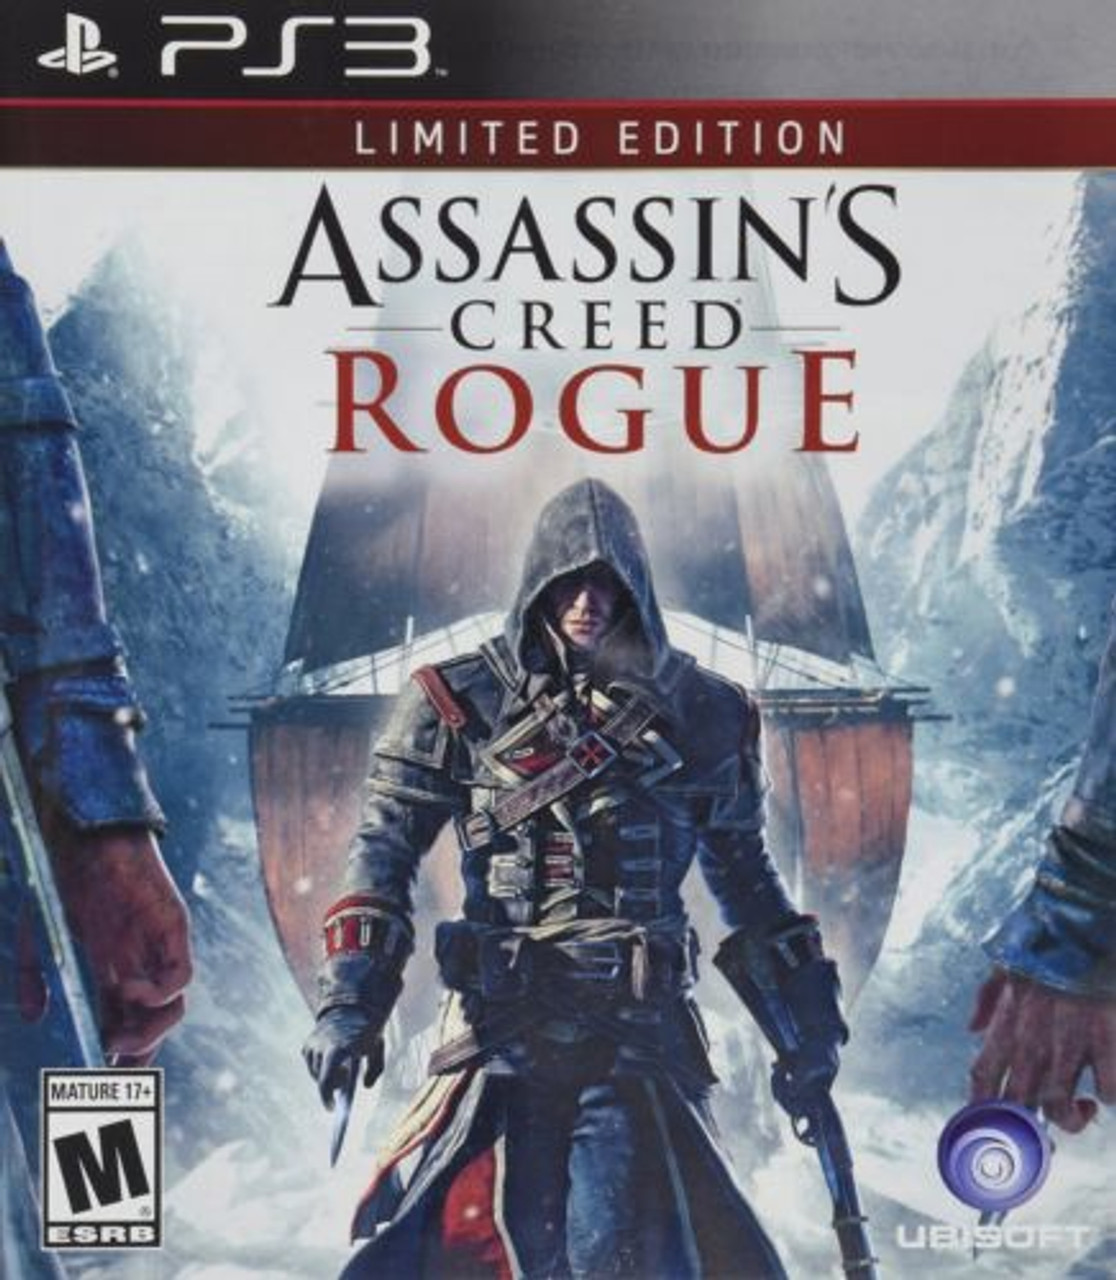 Buy Assassins Creed Rogue